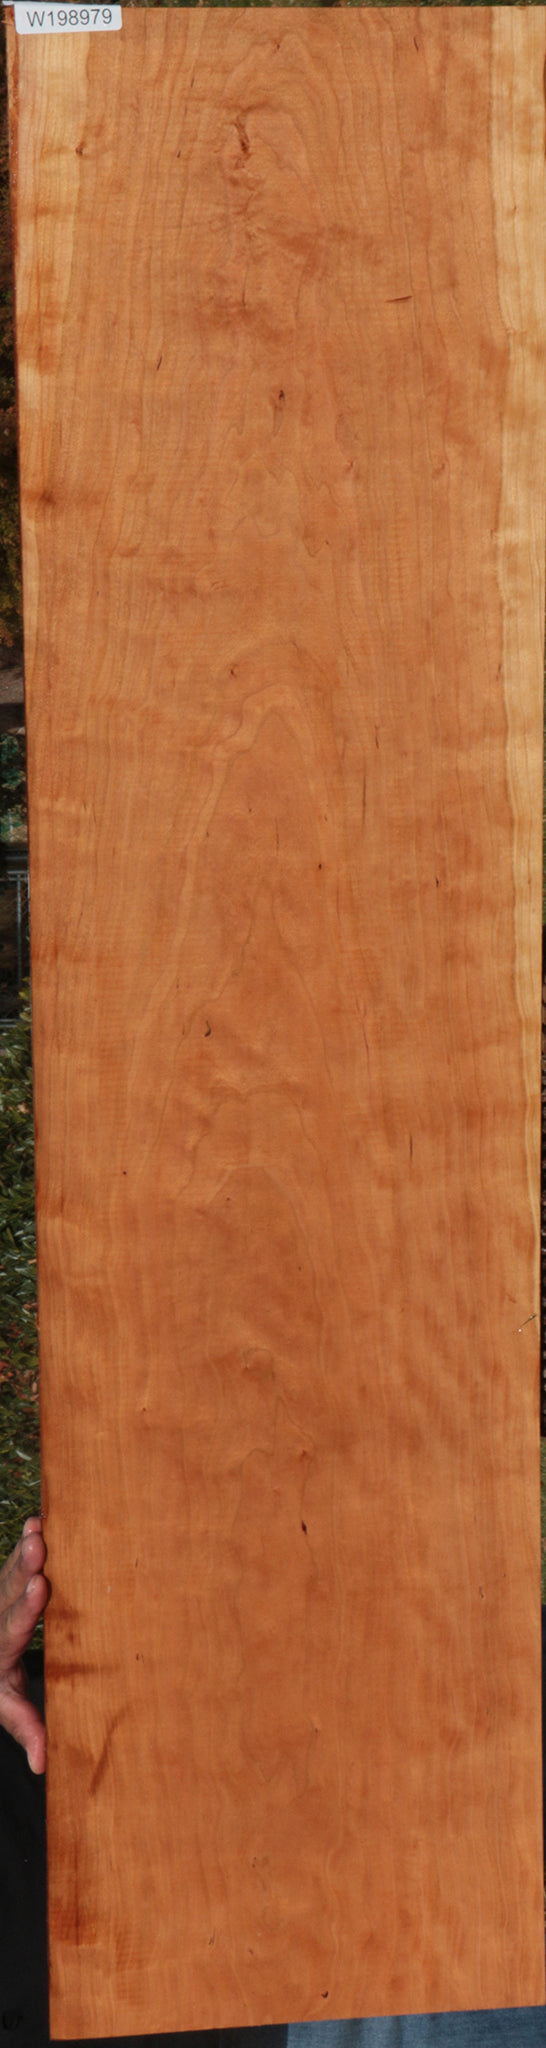 Figured Cherry Lumber